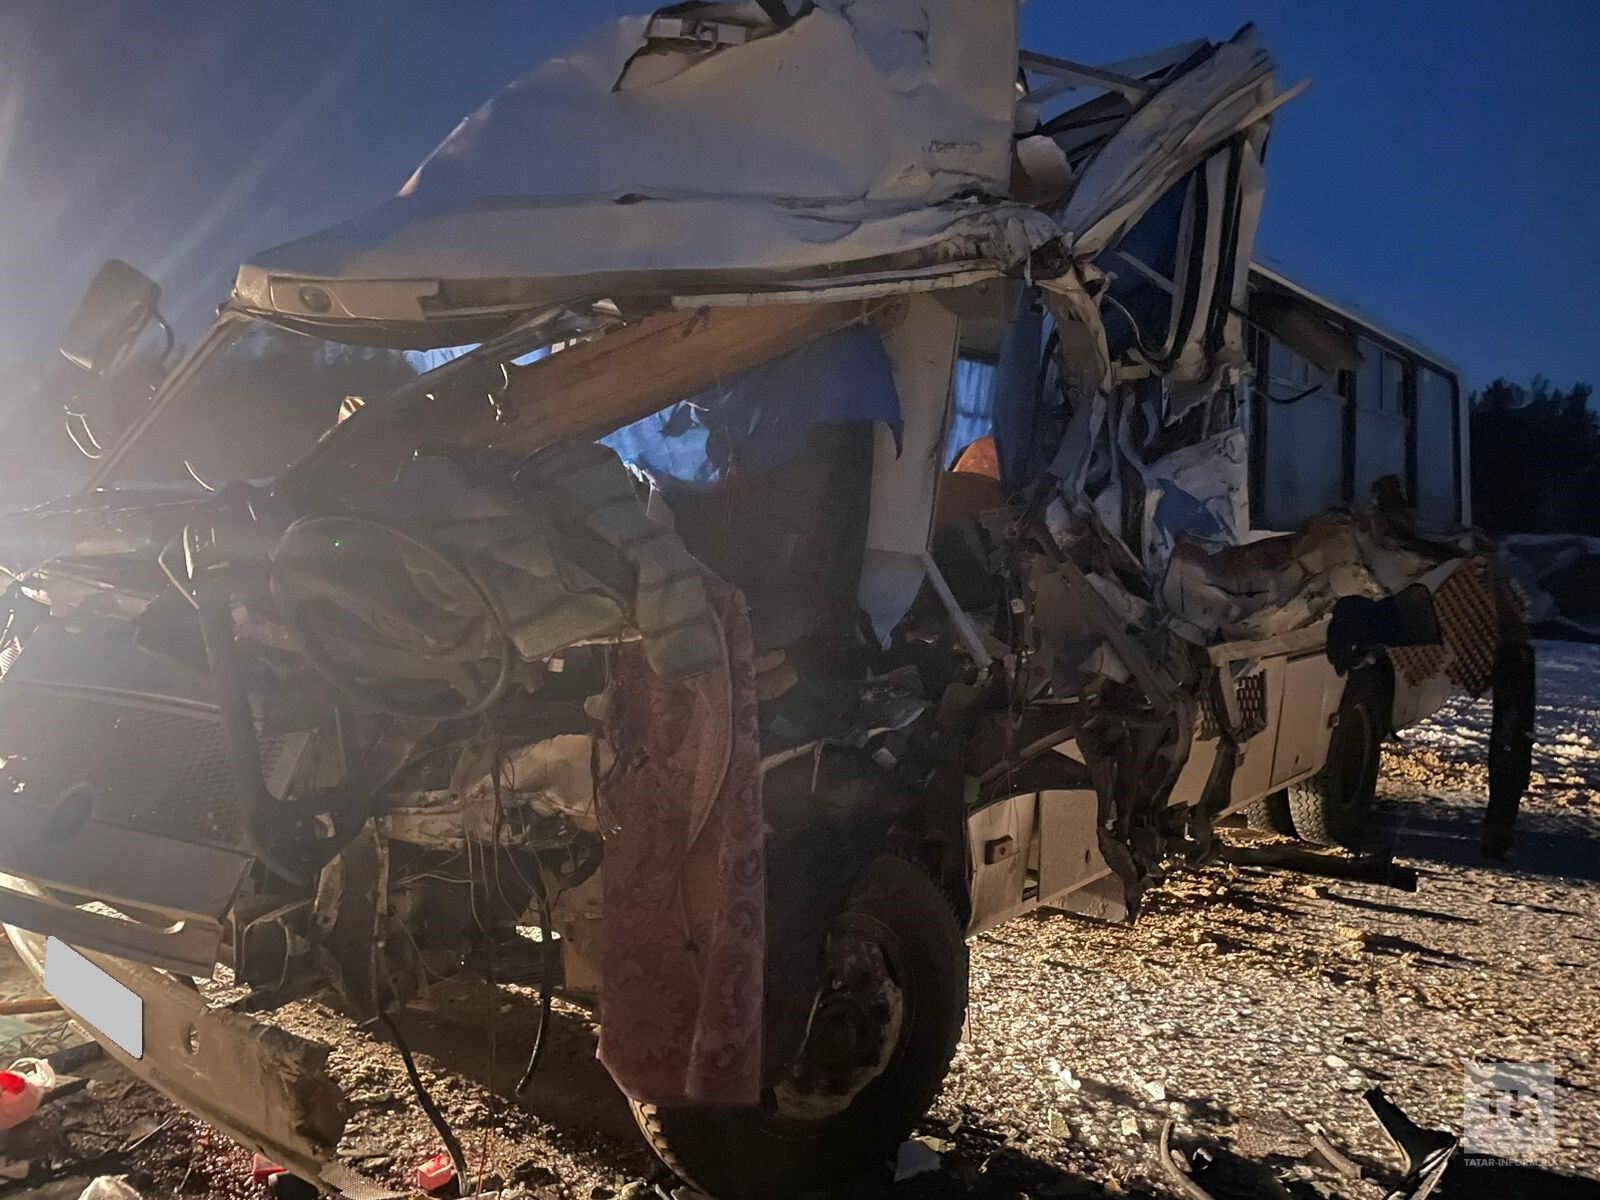 Оба водителя пострадали в ходе ДТП между грузовиком и автобусом на трассе в Татарстане